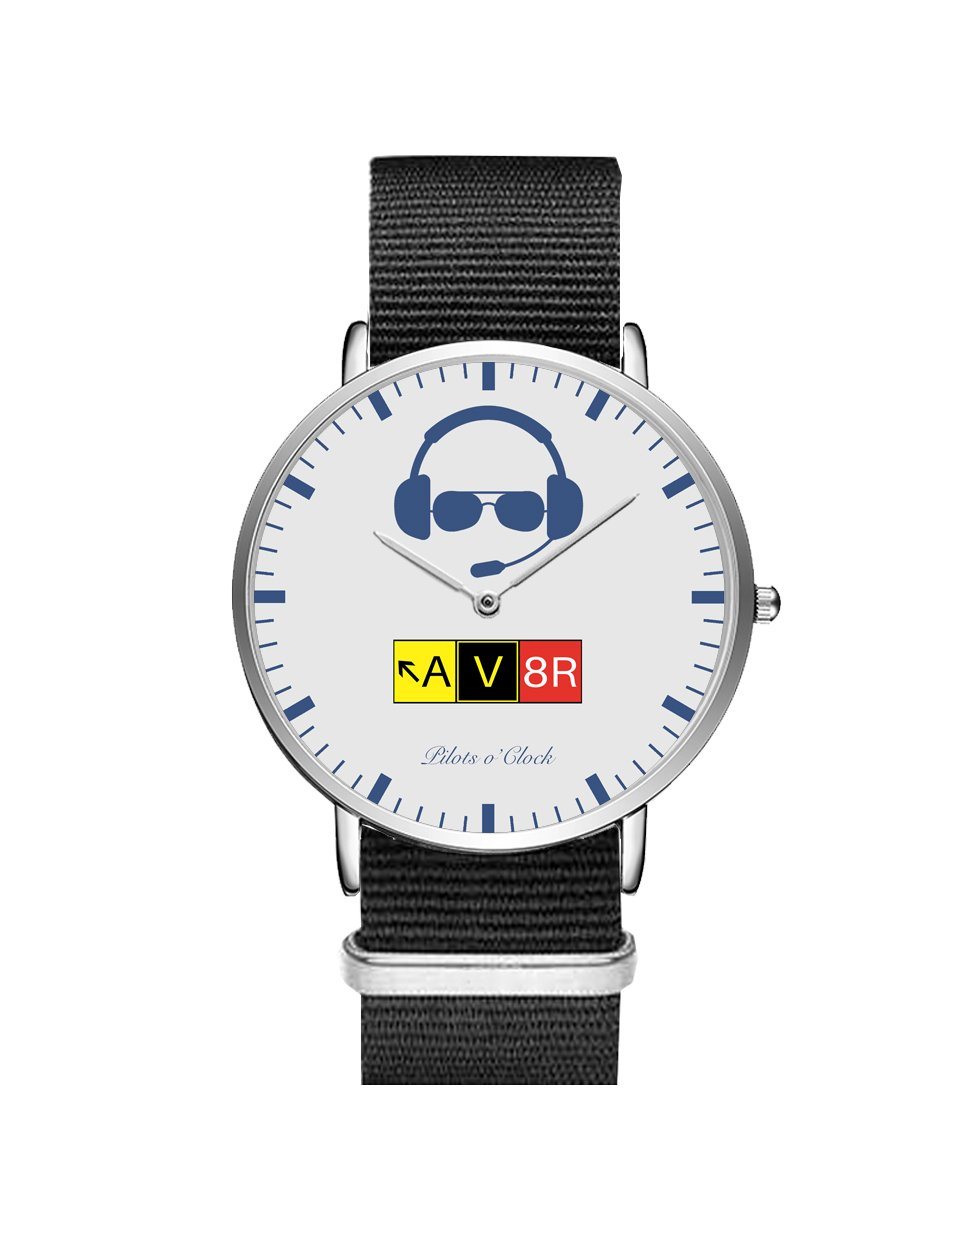 AV8R Leather Strap Watches Pilot Eyes Store Silver & Black Nylon Strap 